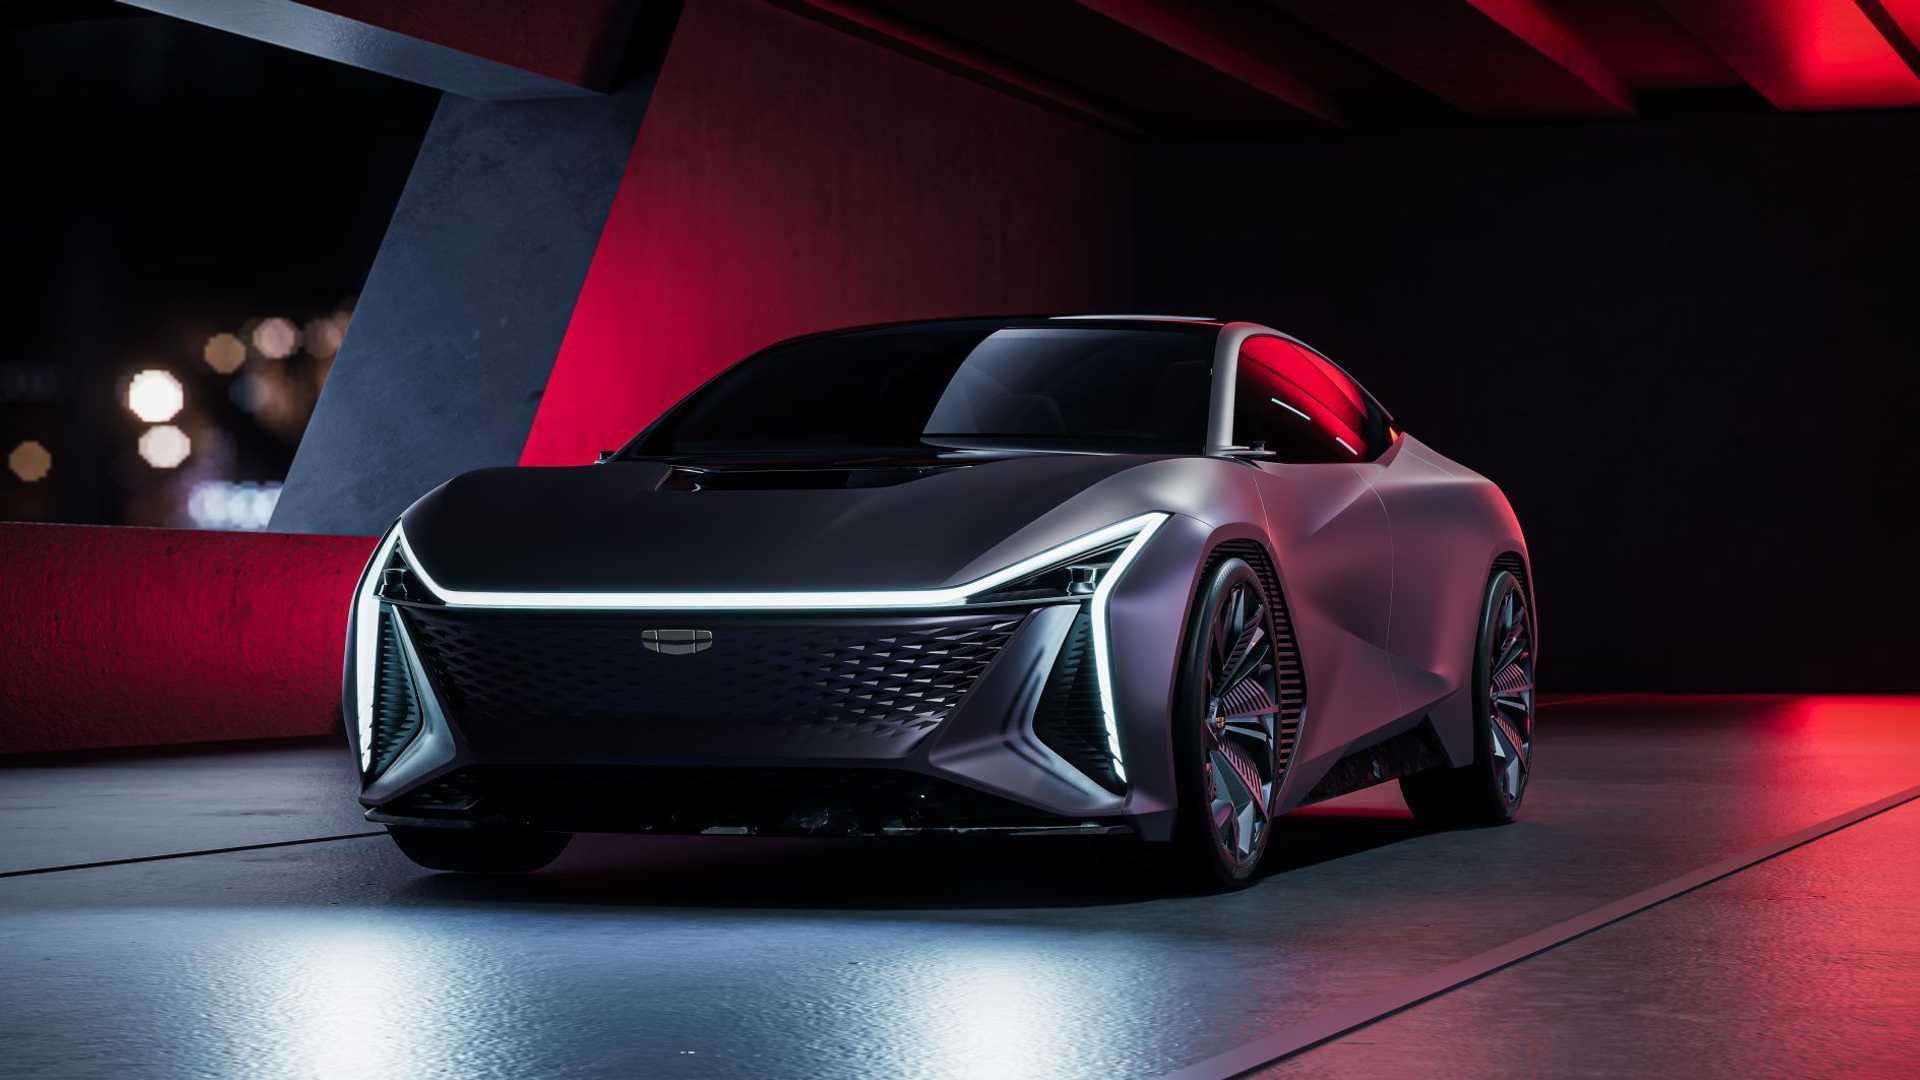 نمای سه چهارم خودروی مفهومی جیلی ویژن استاربرست / Geely Vision Starburst Concept